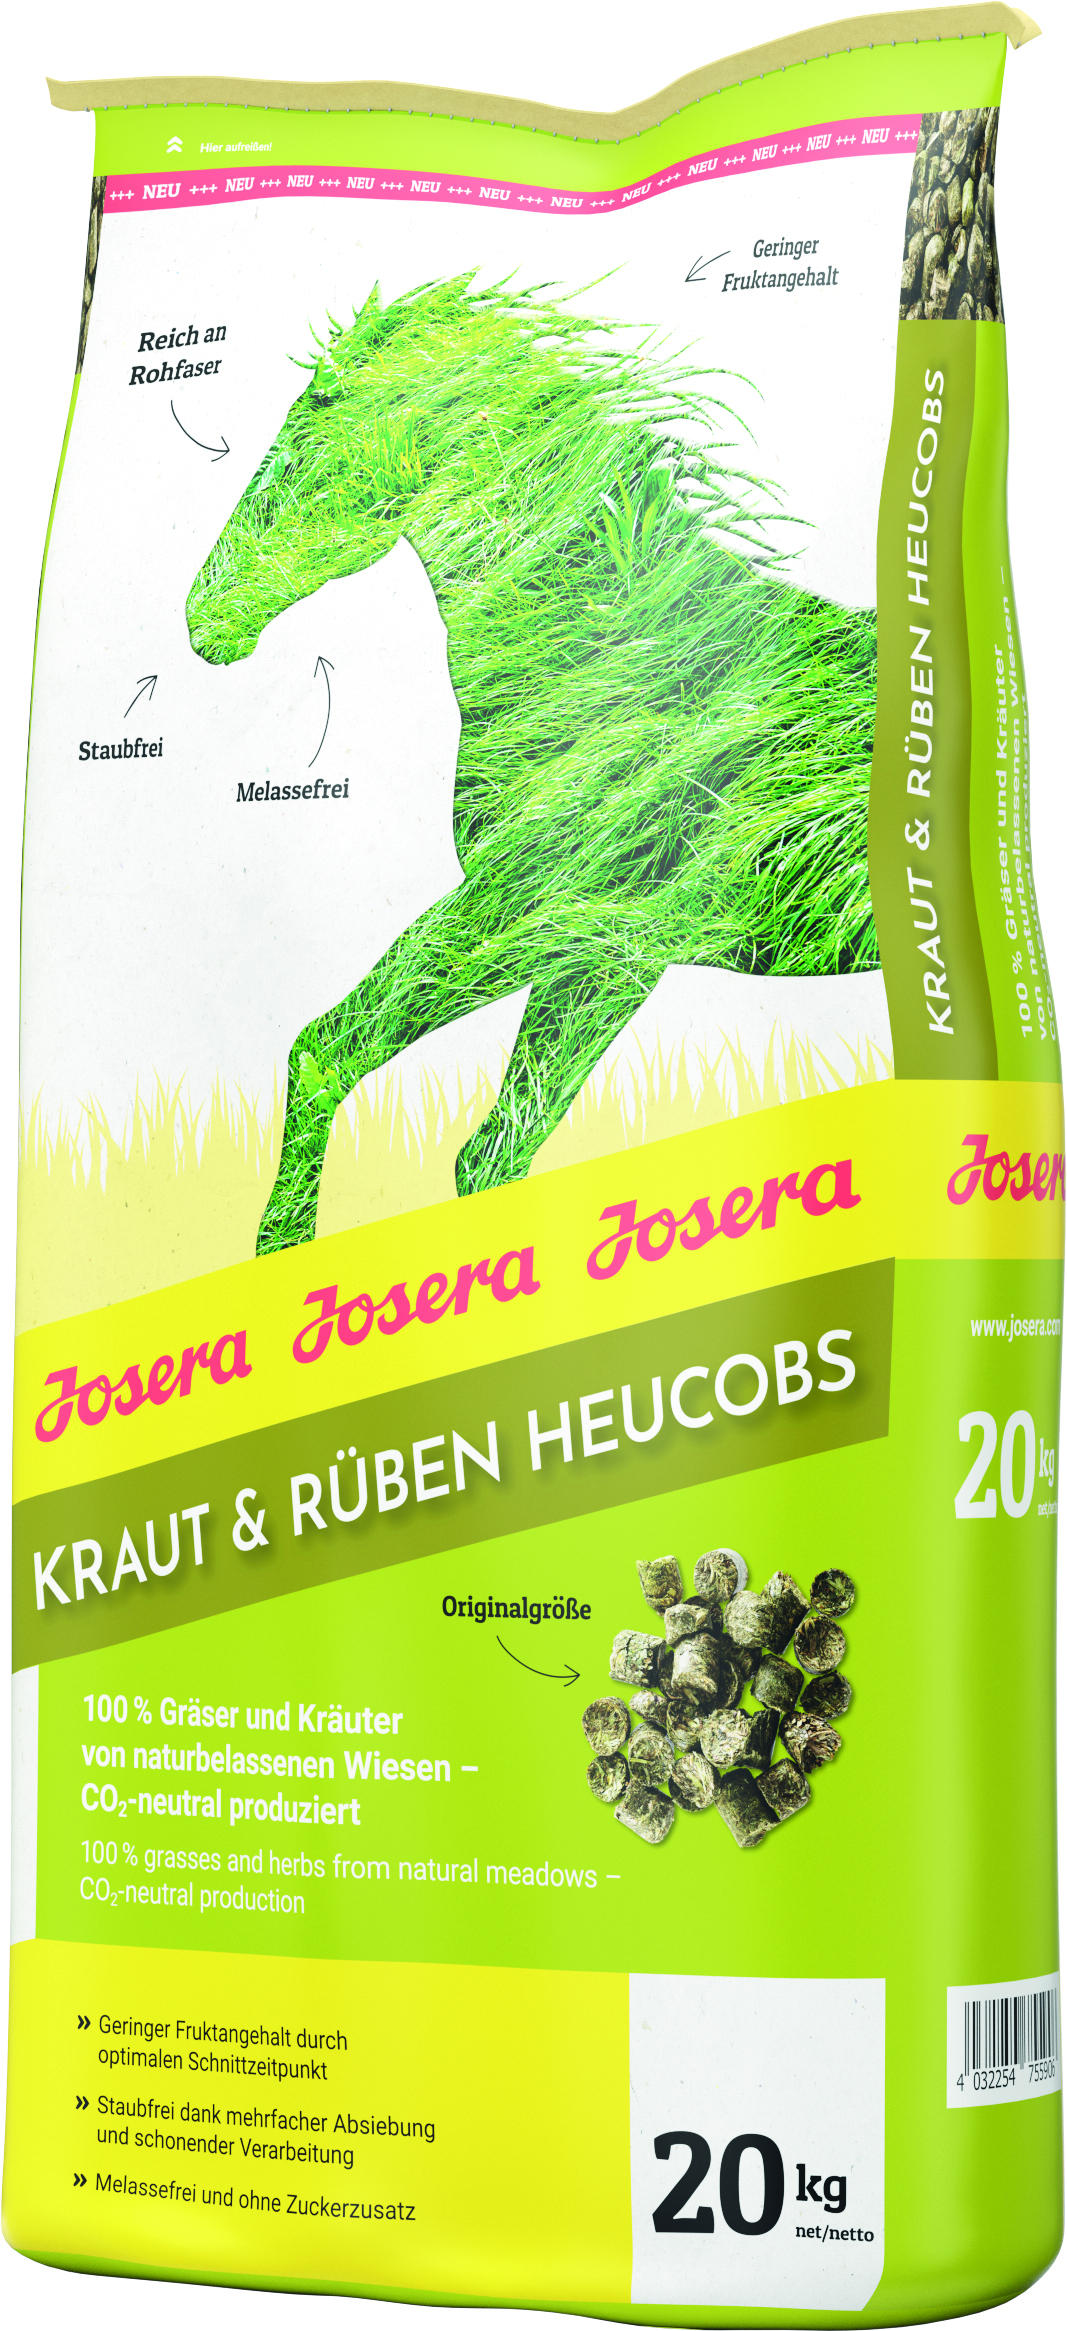 GRUNER Josera Kraut & Rüben Heucobs 20kg Pferdefutter